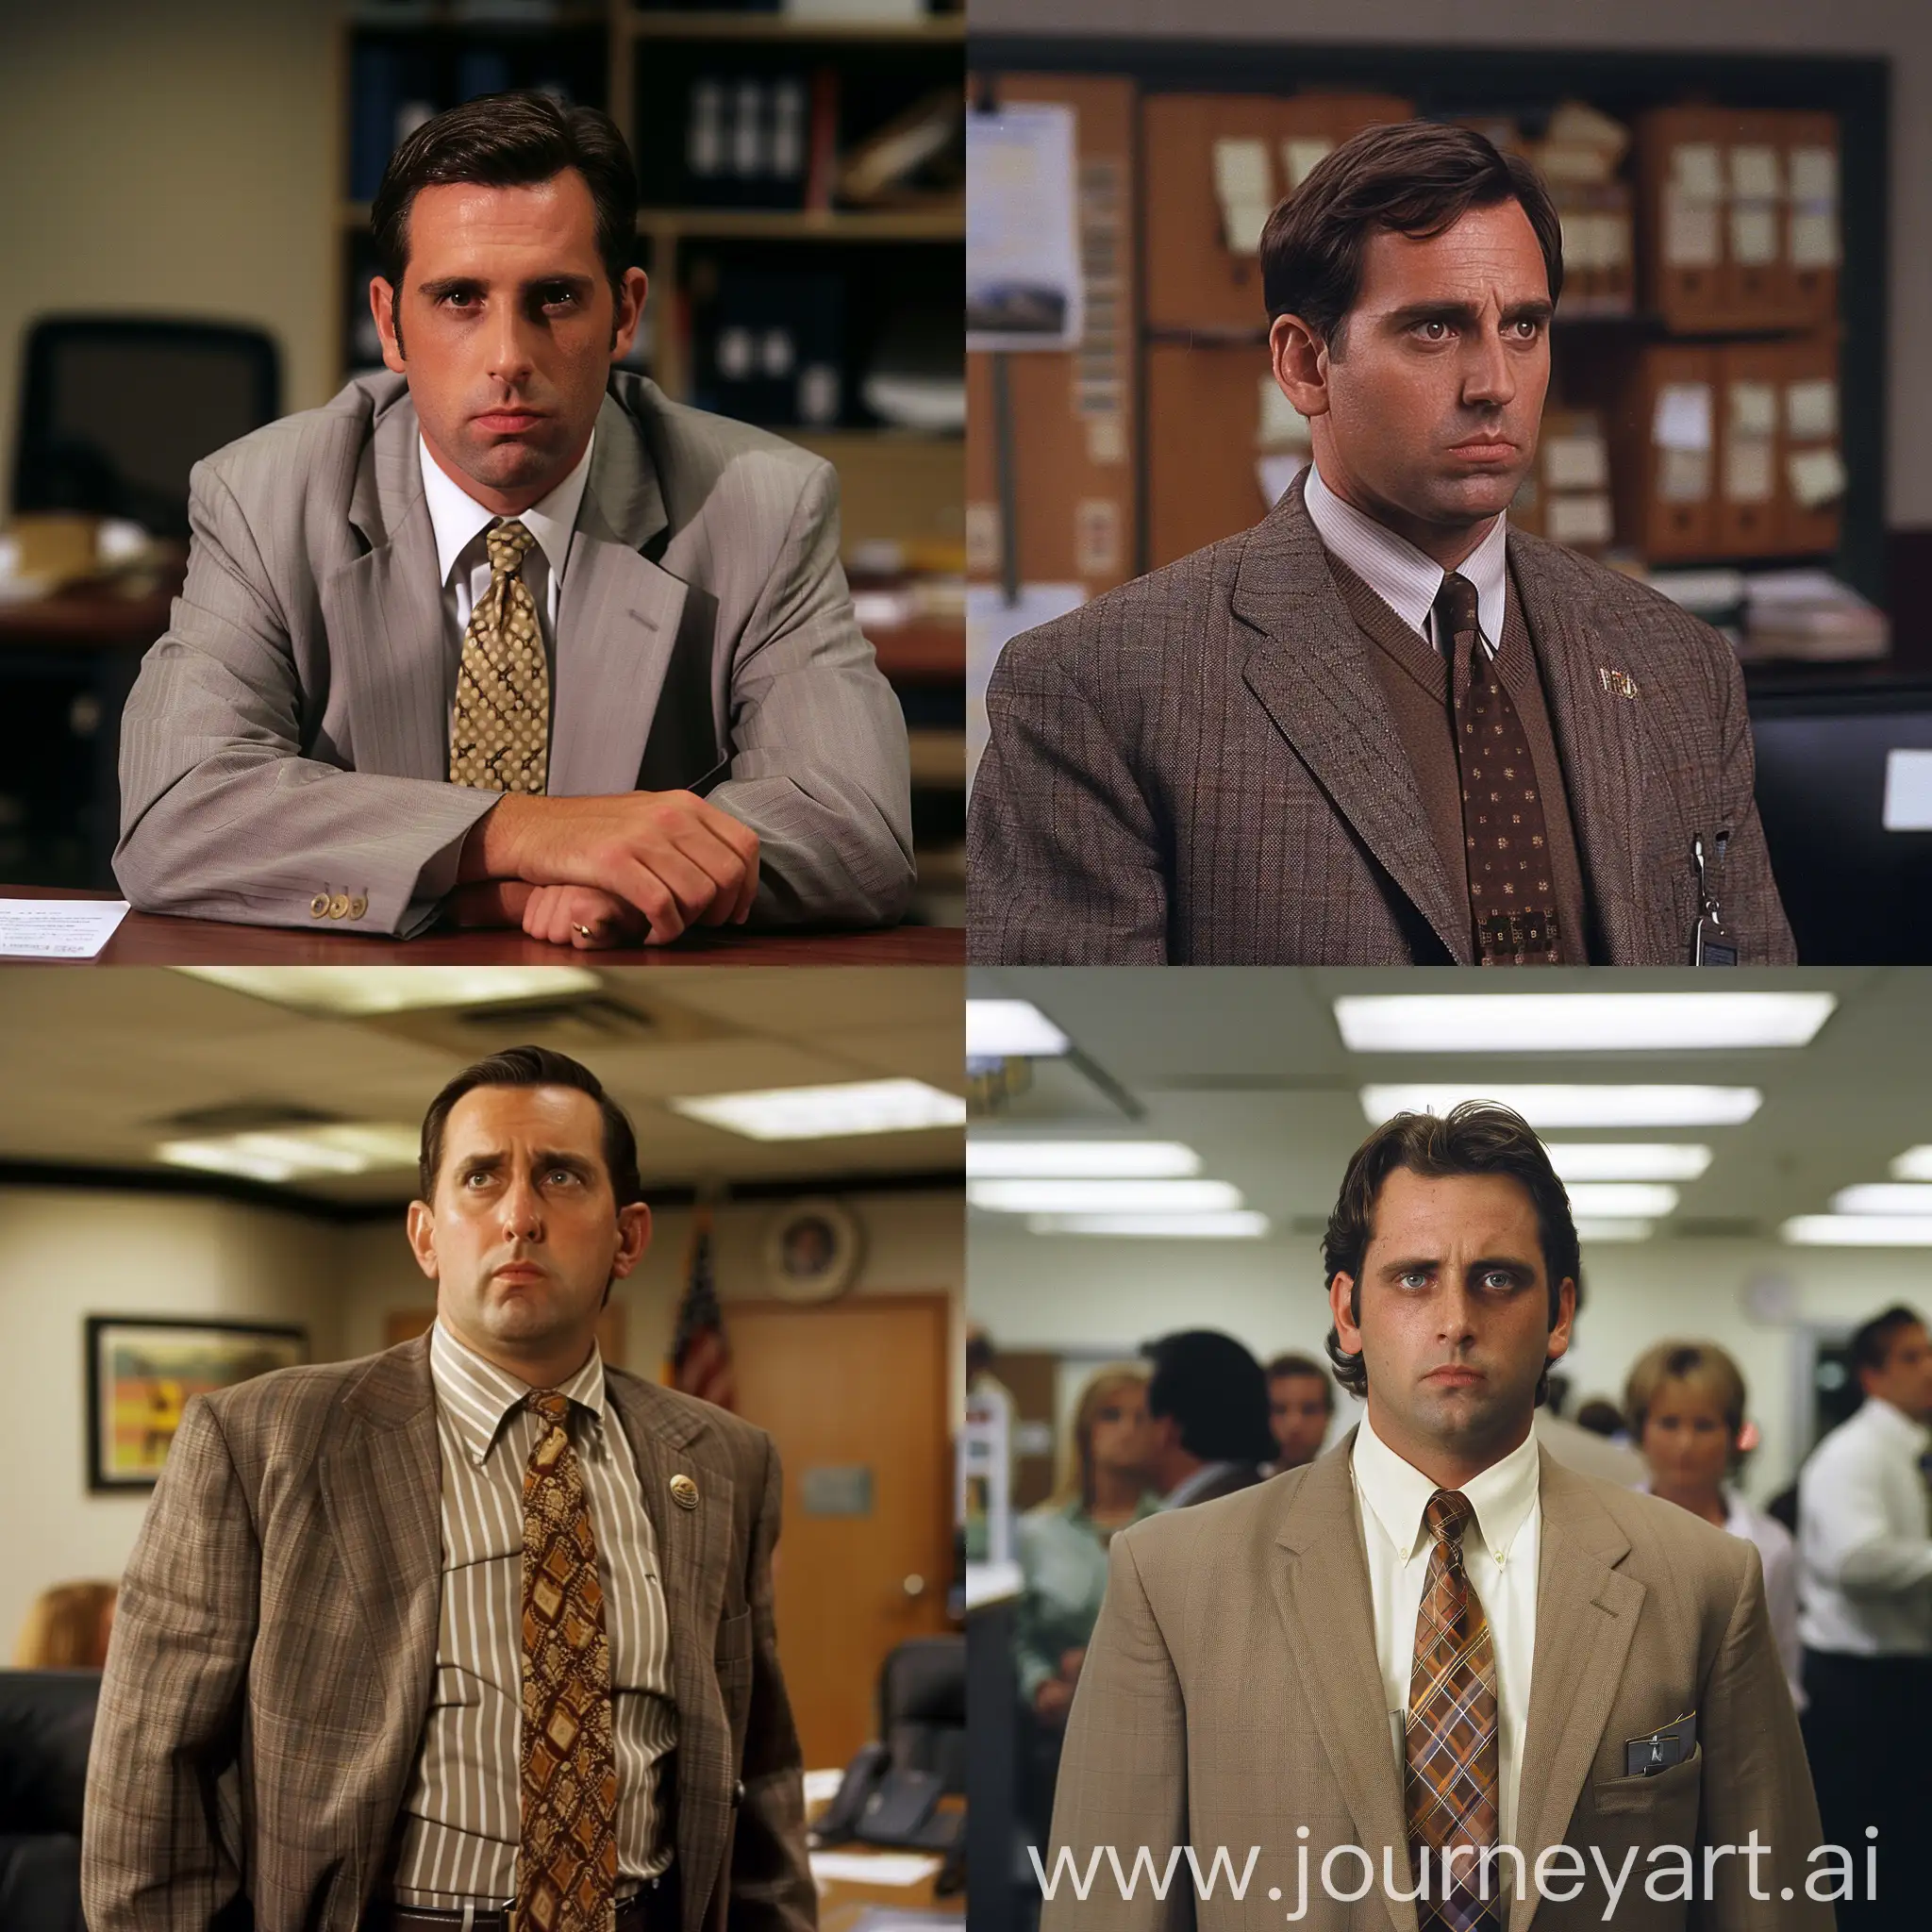 Michael-Scott-as-Forrest-Gump-Office-Portrait